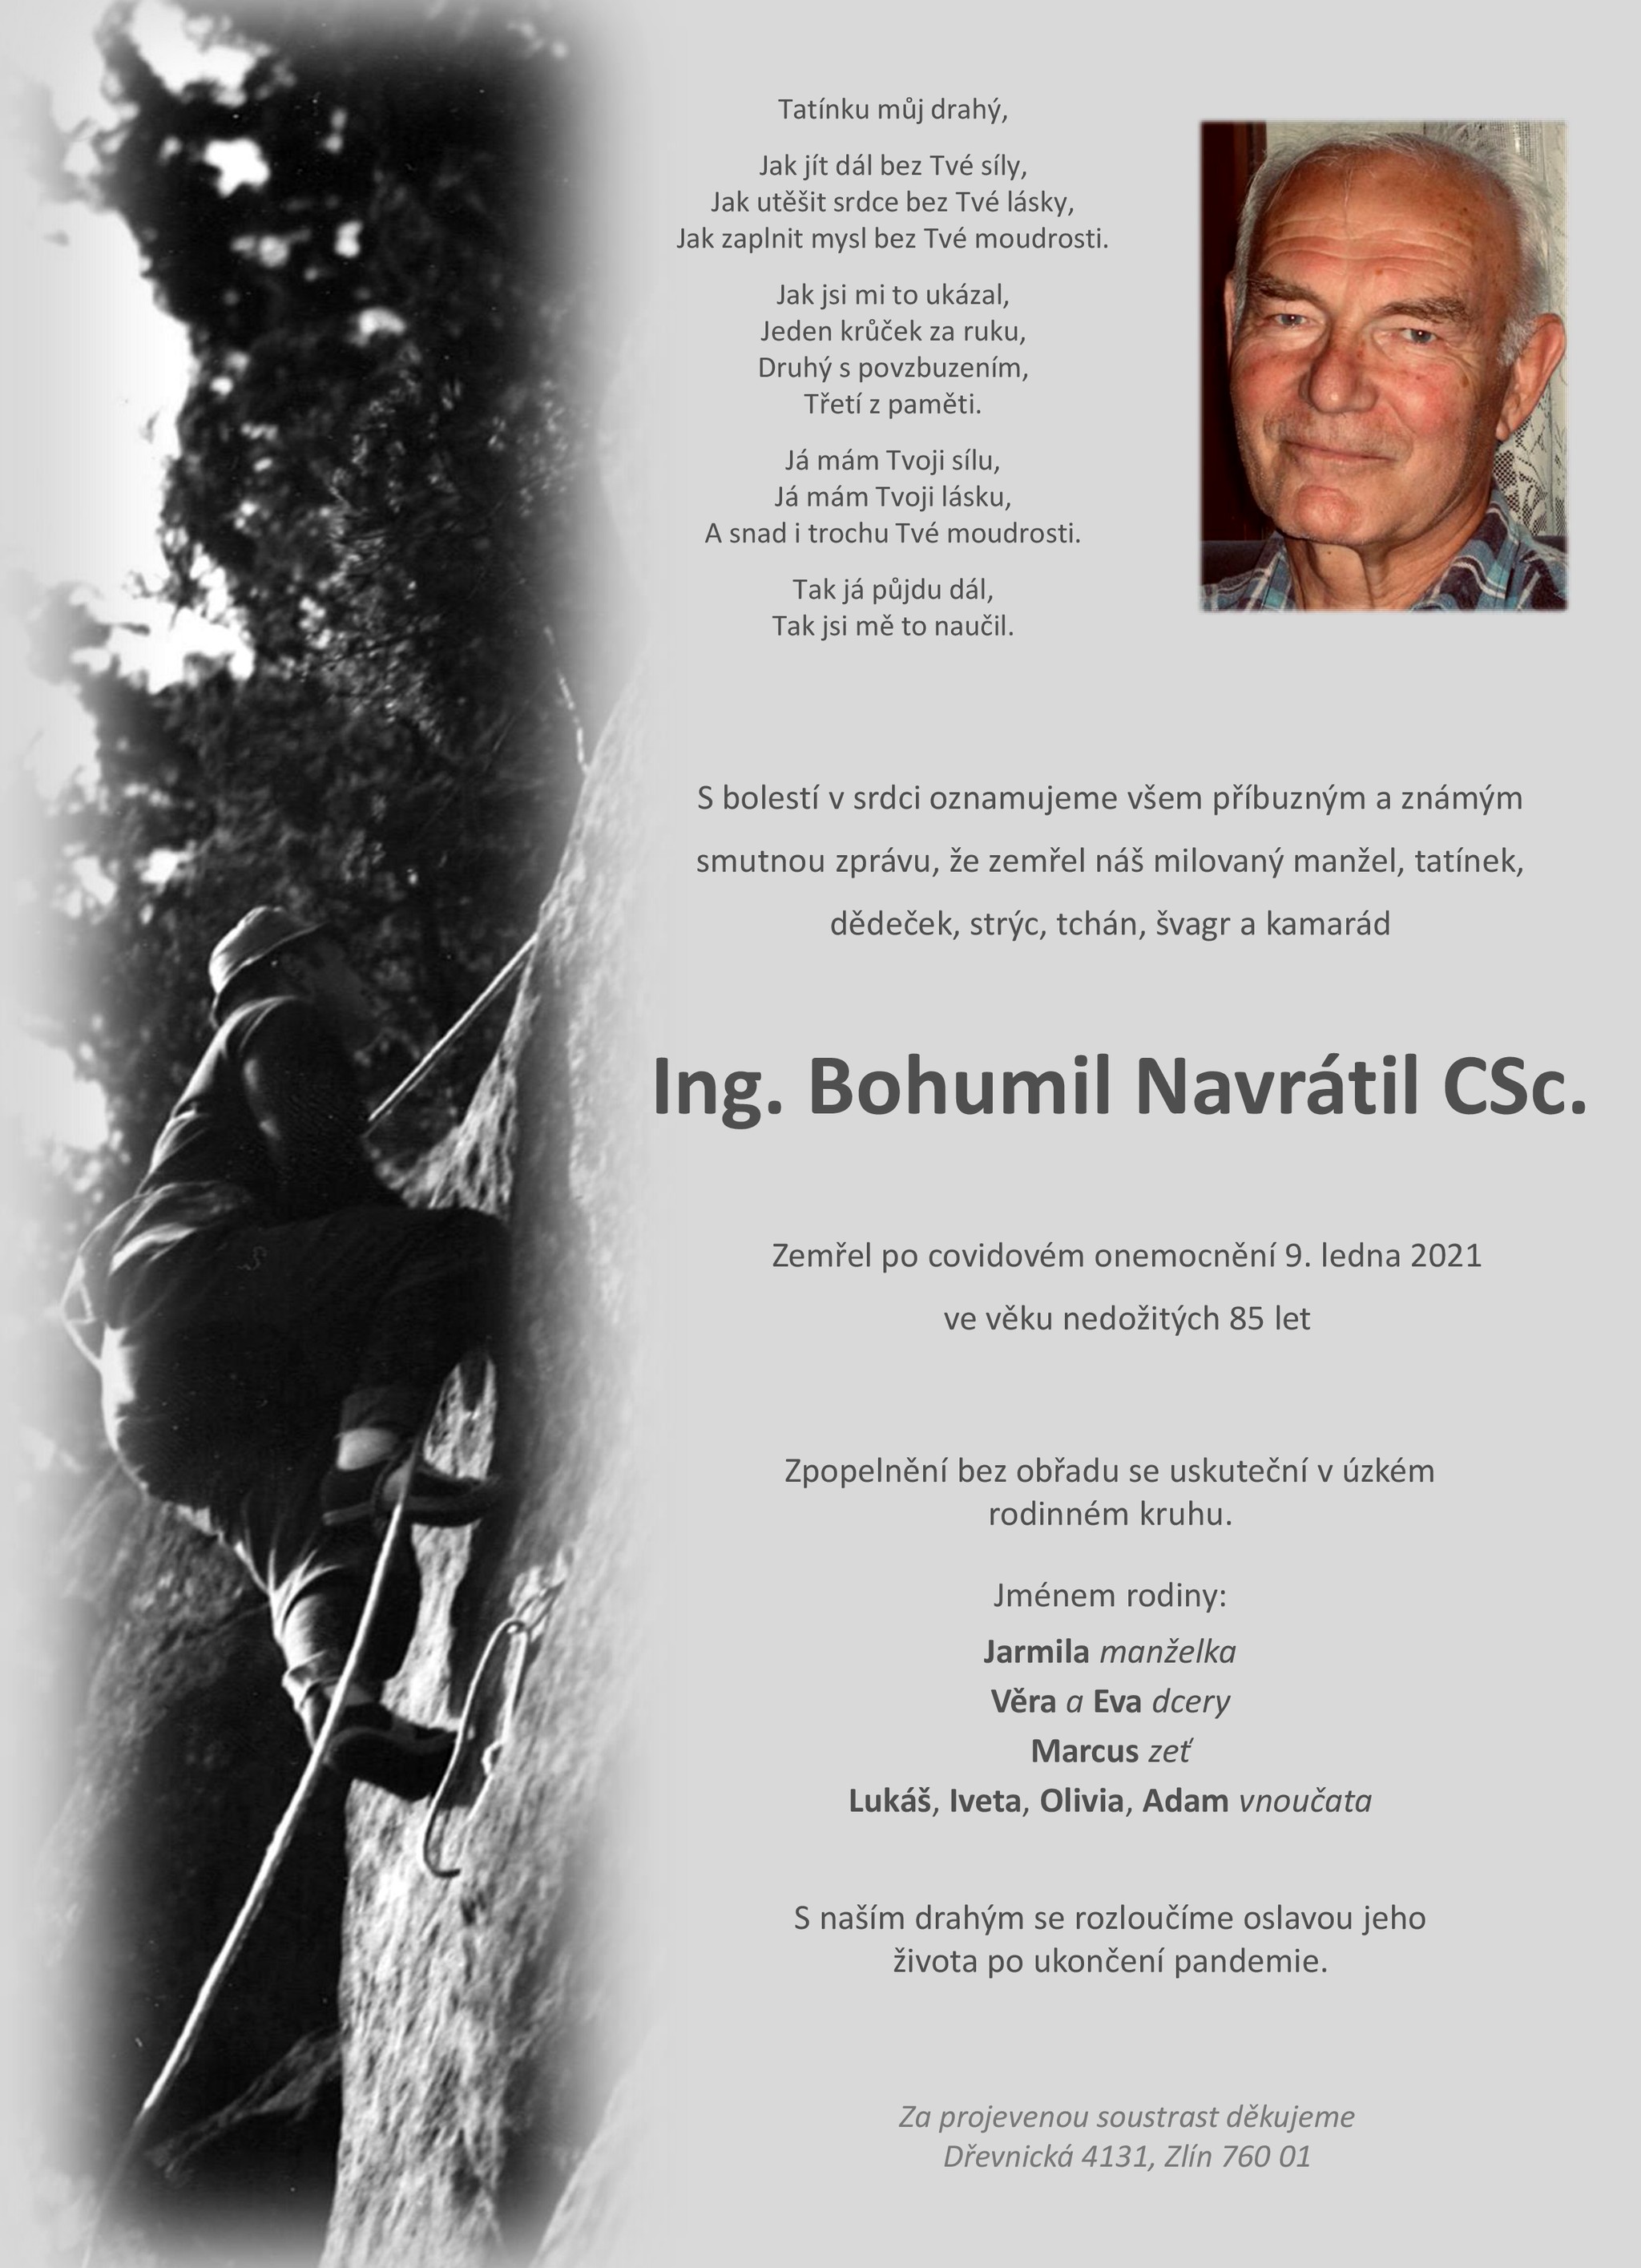 Ing. Bohumil Navrátil, CSc.